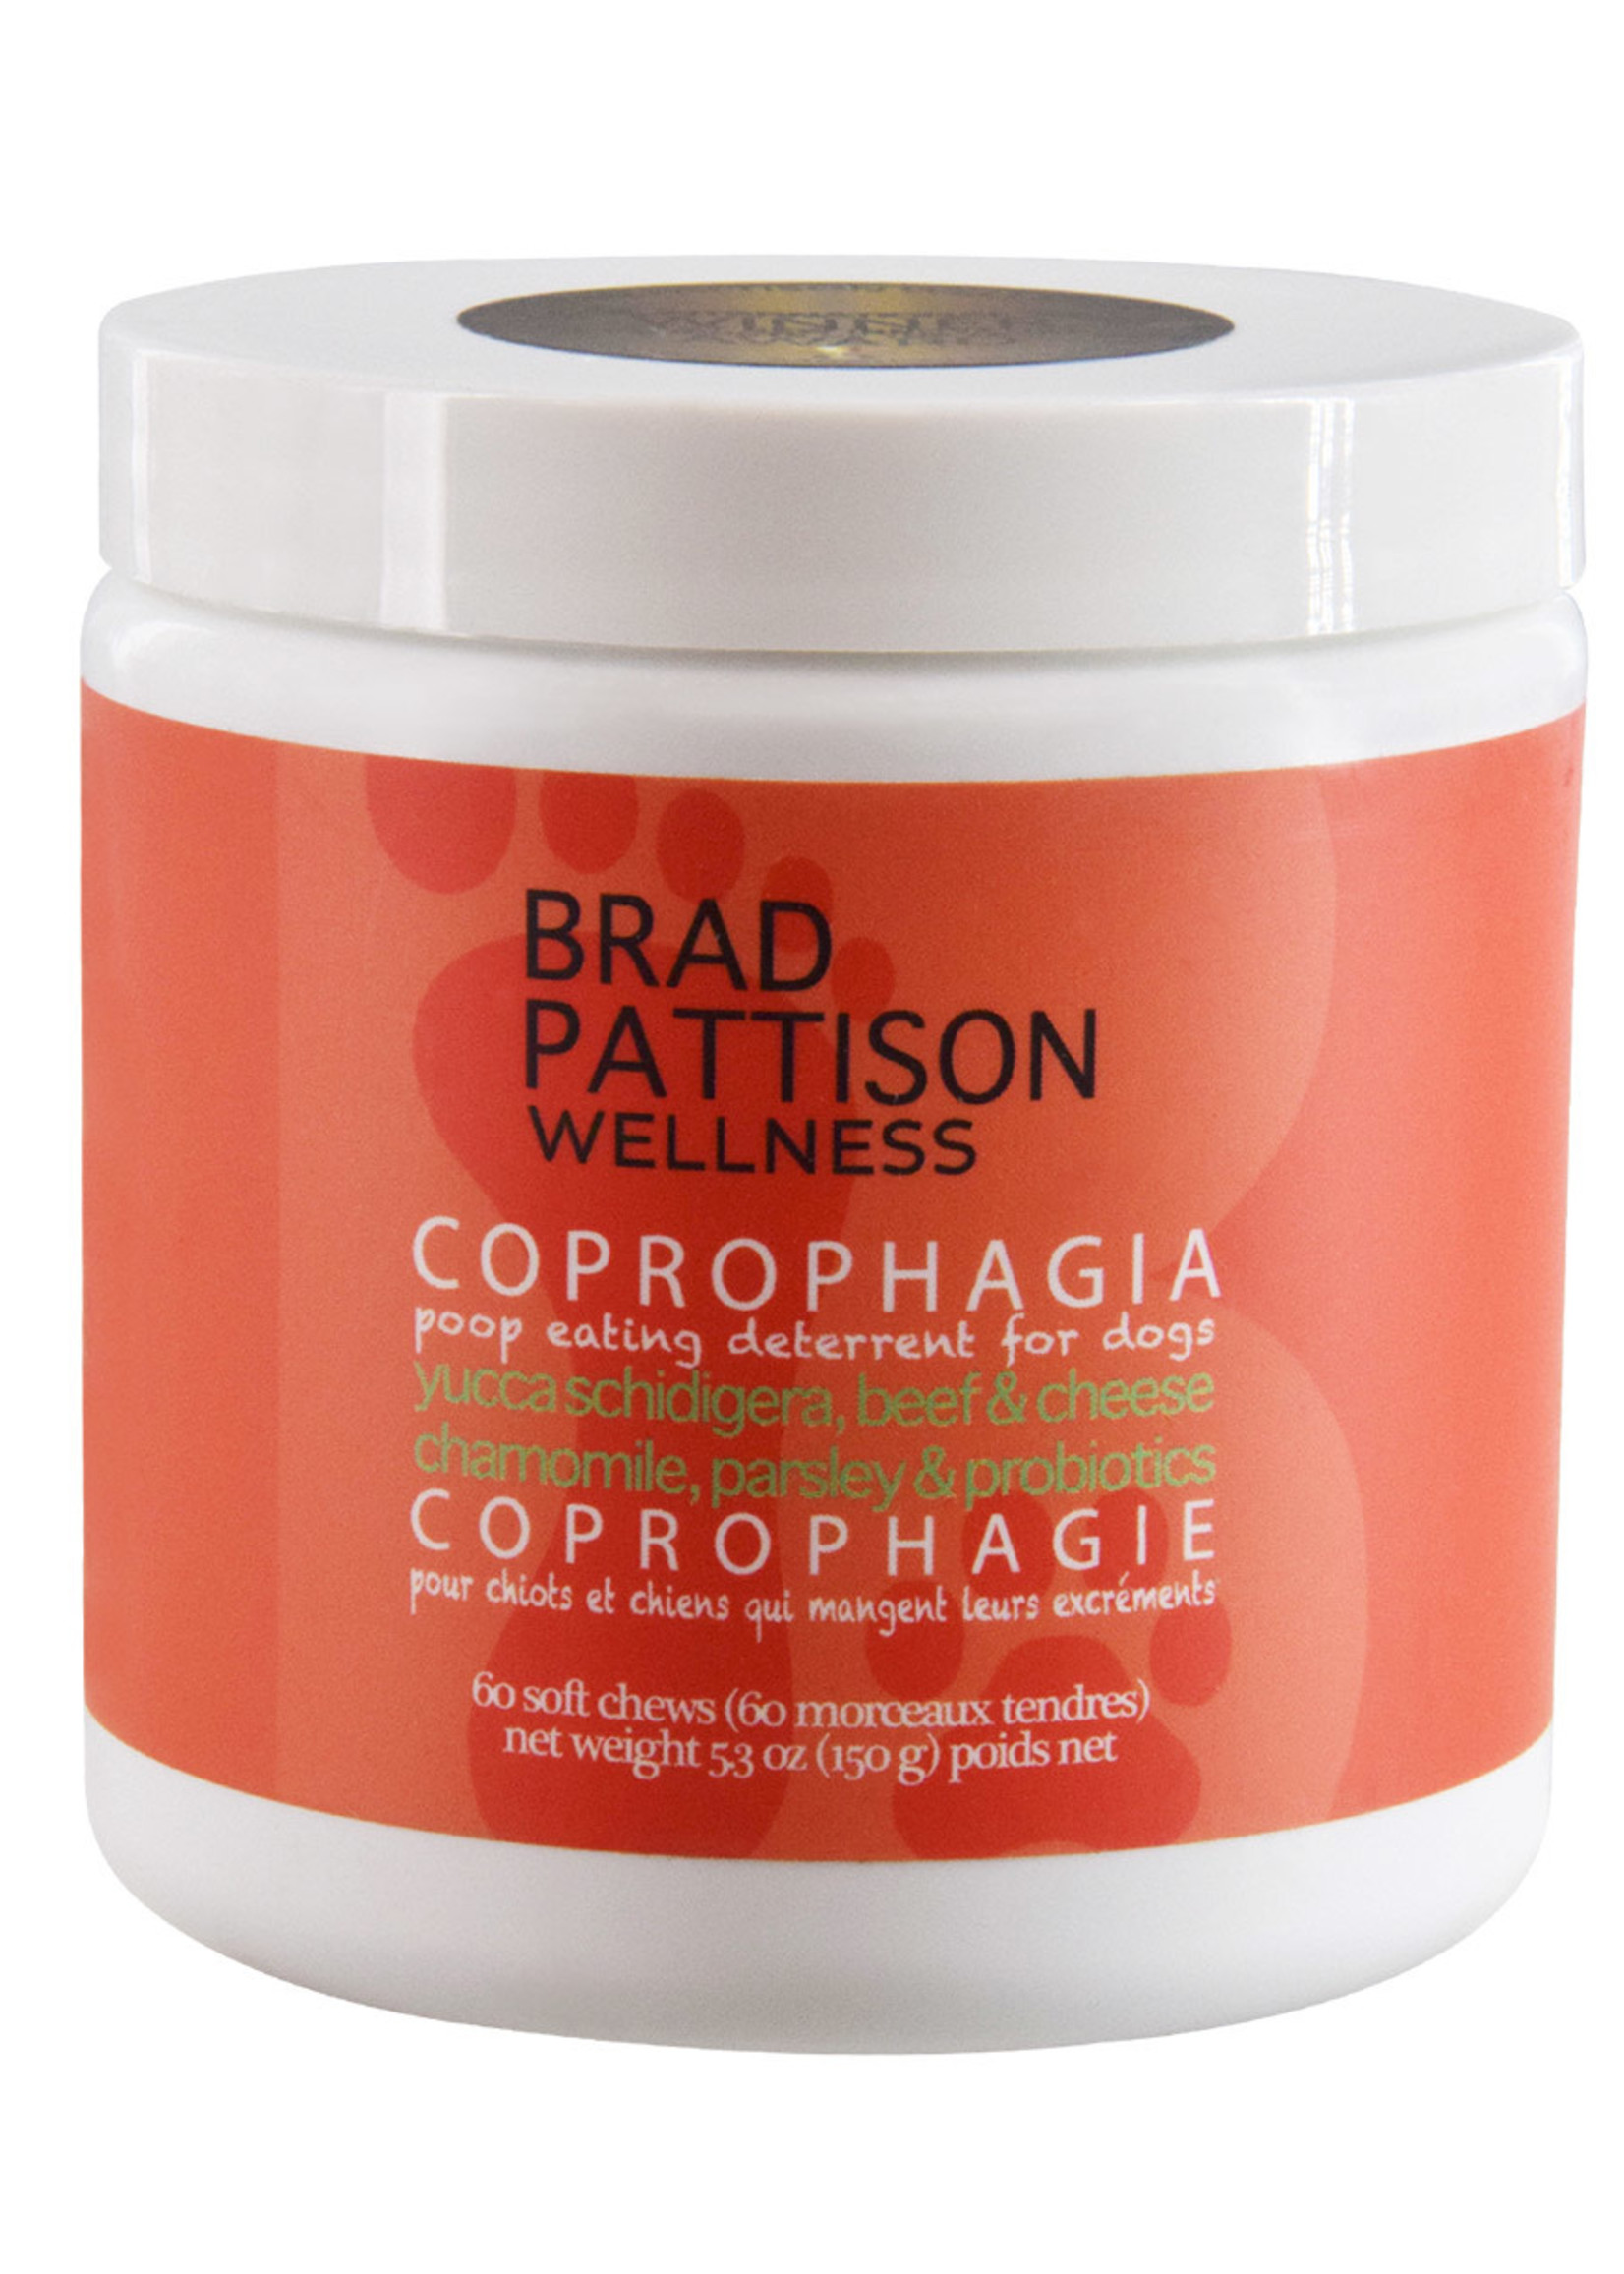 Brad Pattison Wellness Brad Pattison Wellness Coprophagia 150g